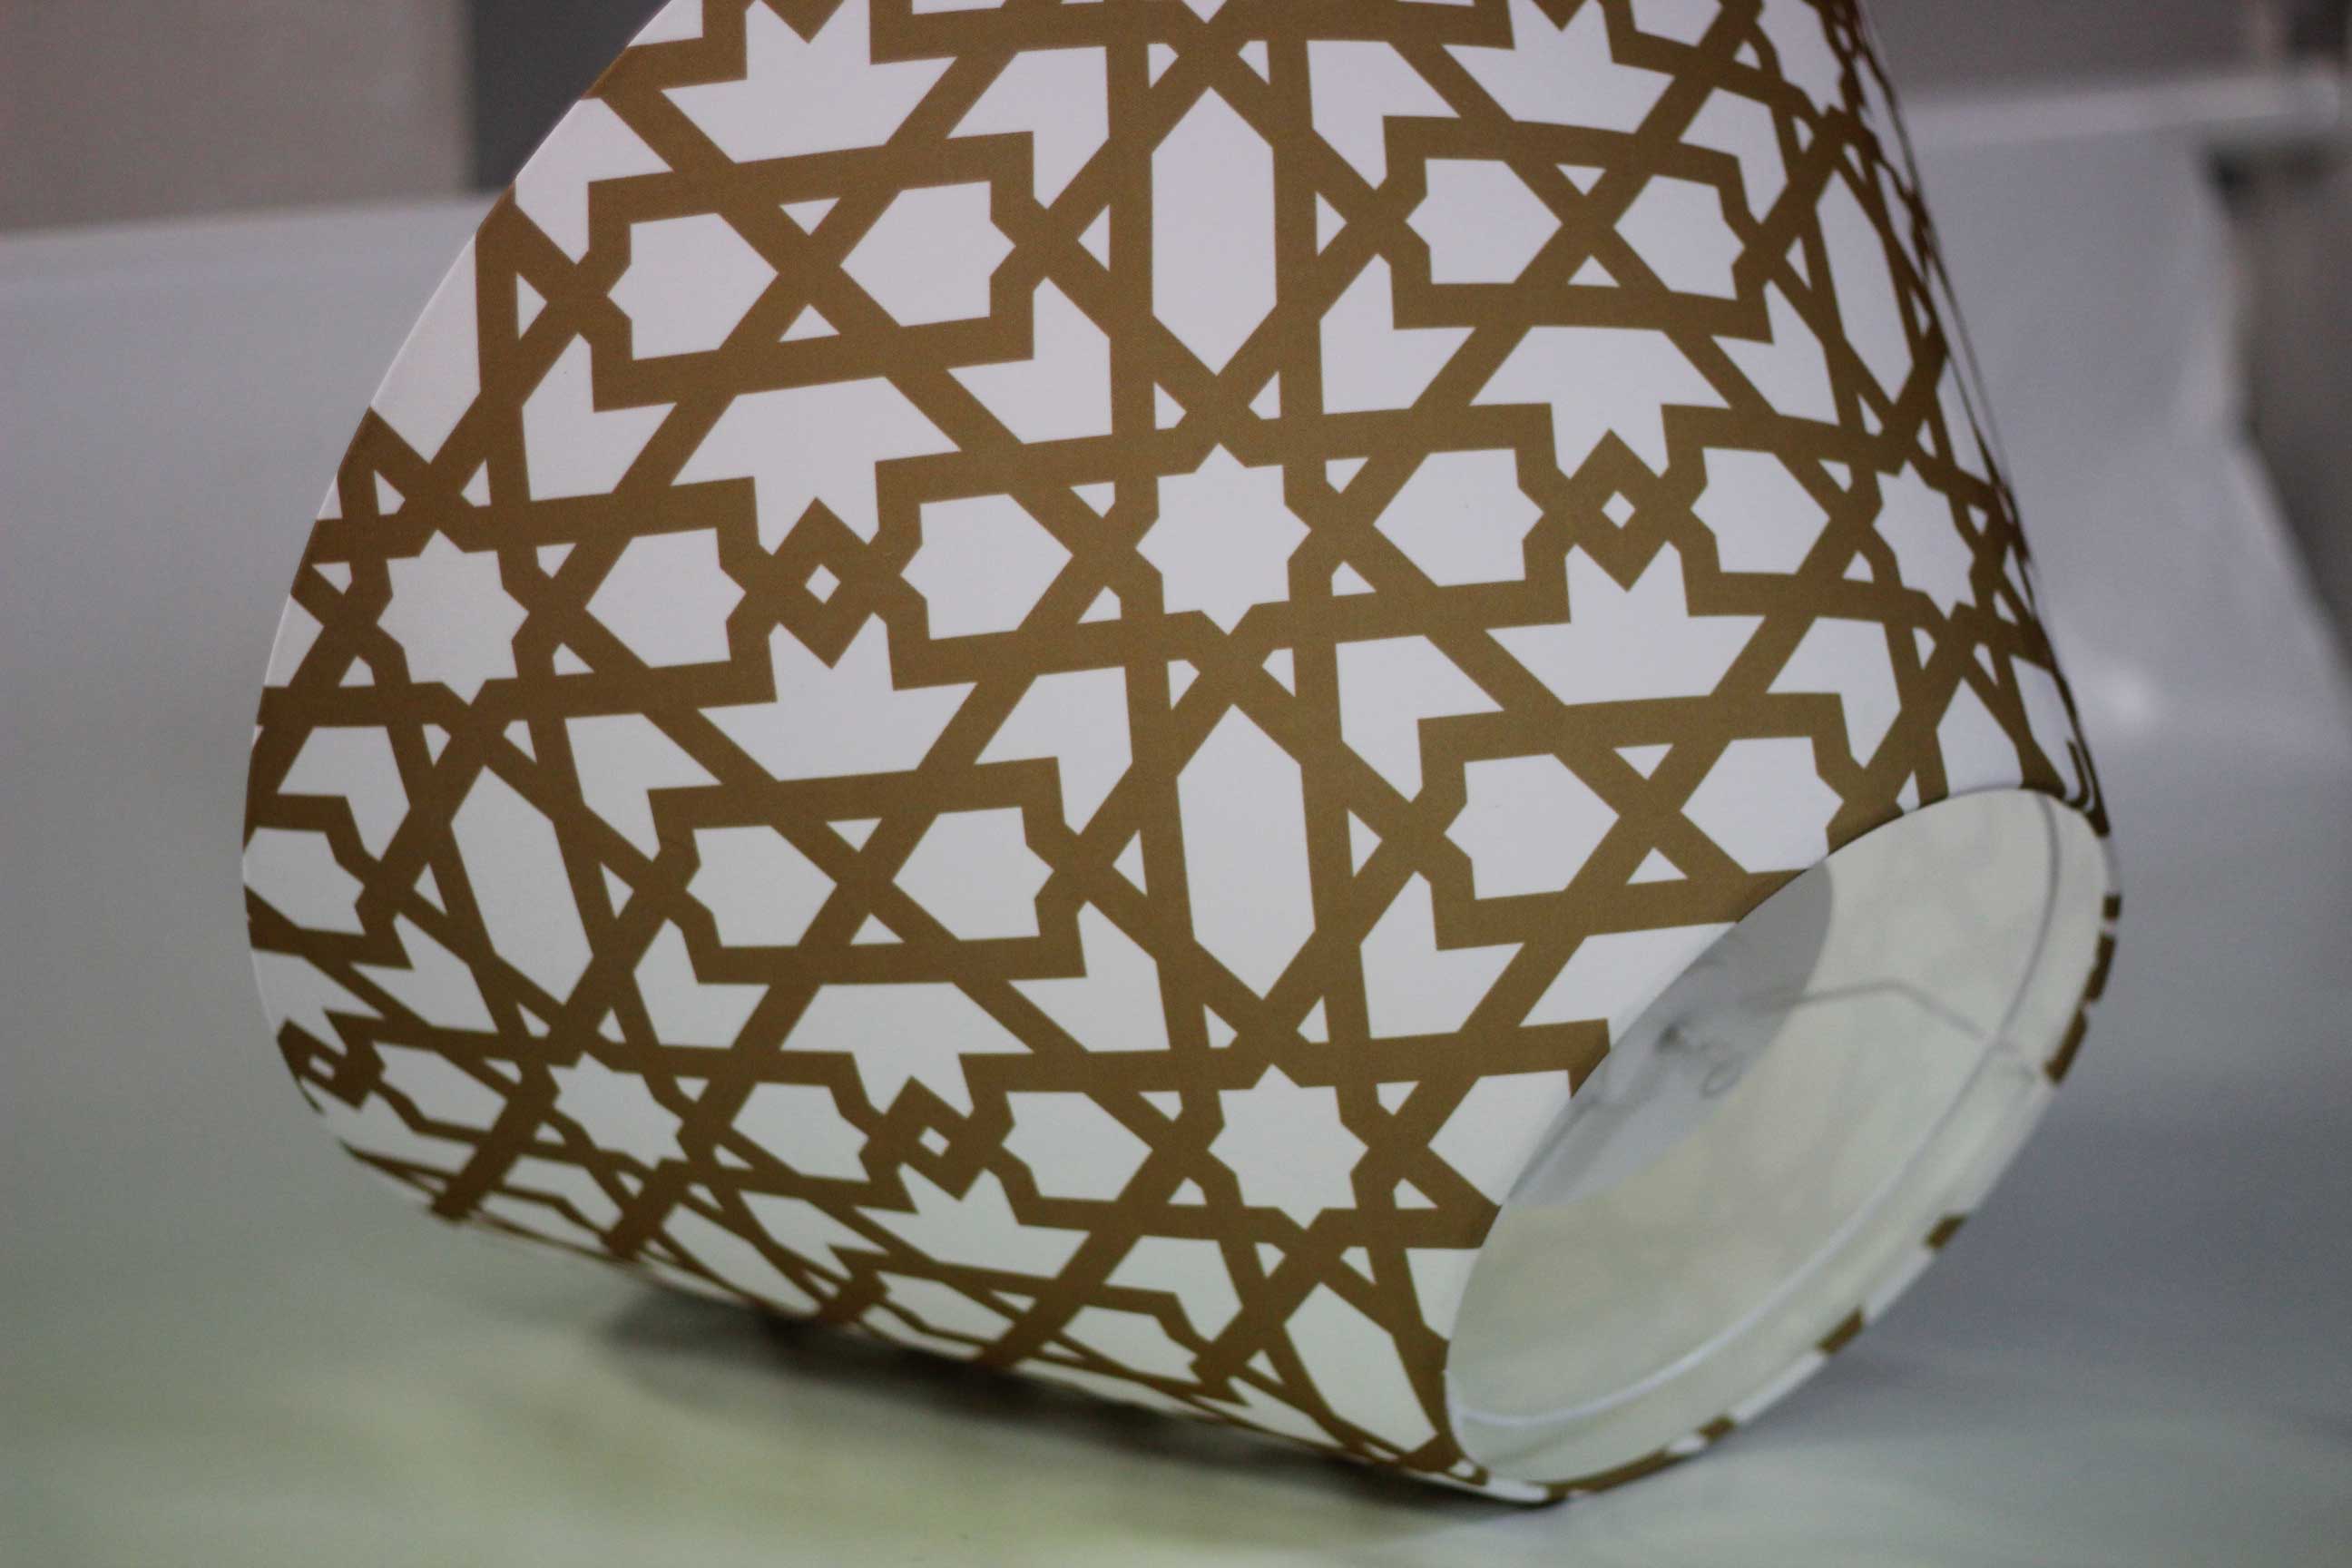 Pantalla para lampara personalizada con la imagen de la celosía de Cervezas Alhambra fabricada por Portage